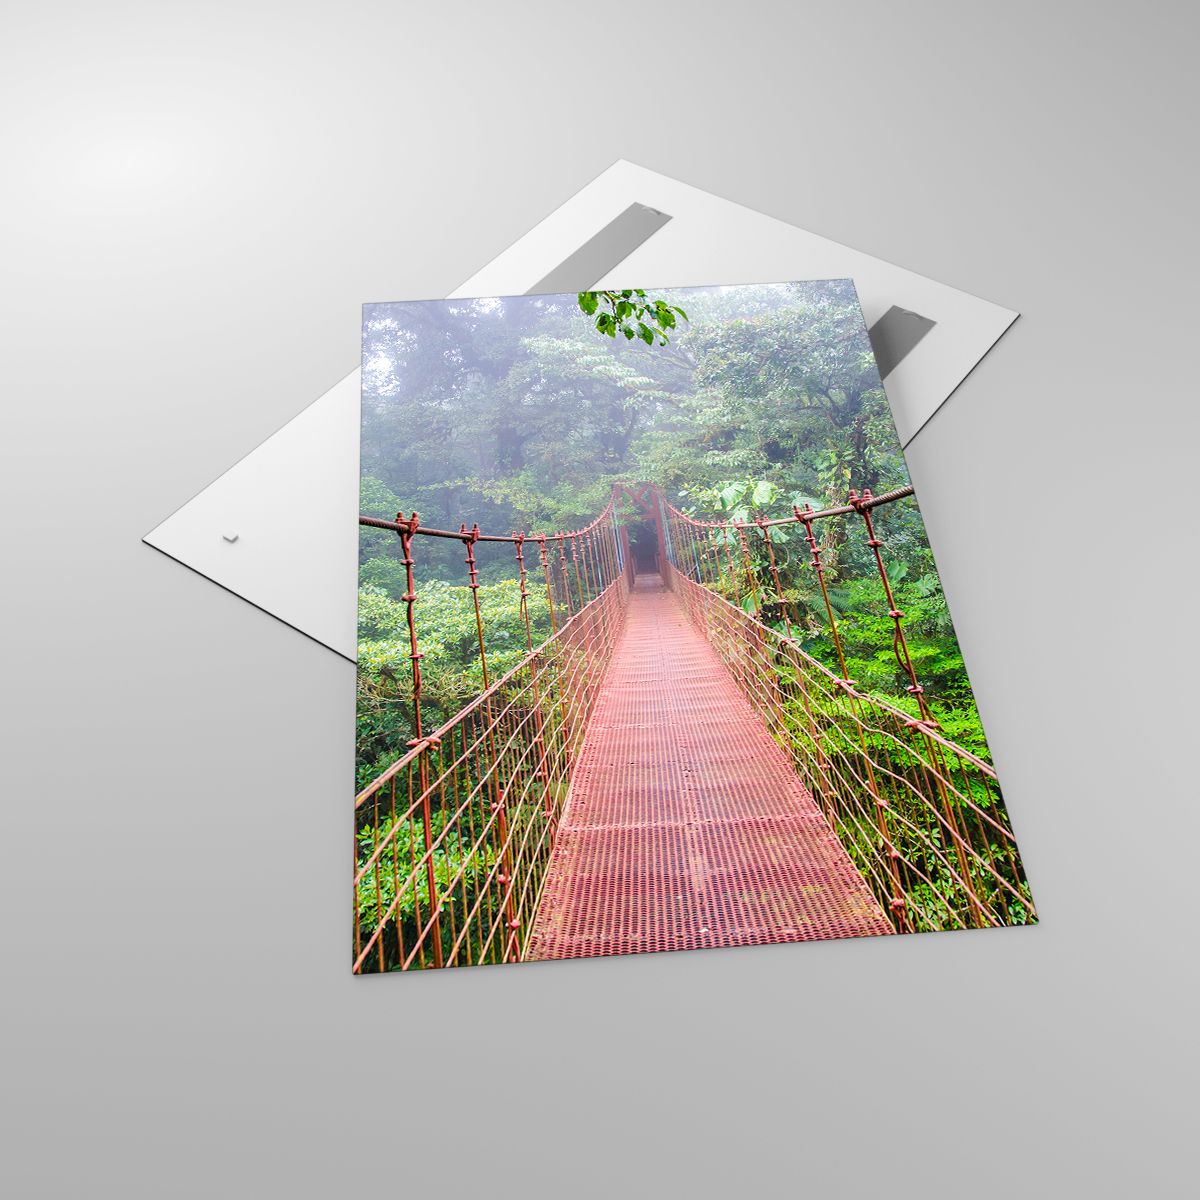 Glasbild Landschaft, Glasbild Urwald, Glasbild Costa Rica, Glasbild Hängende Brücke, Glasbild Natur